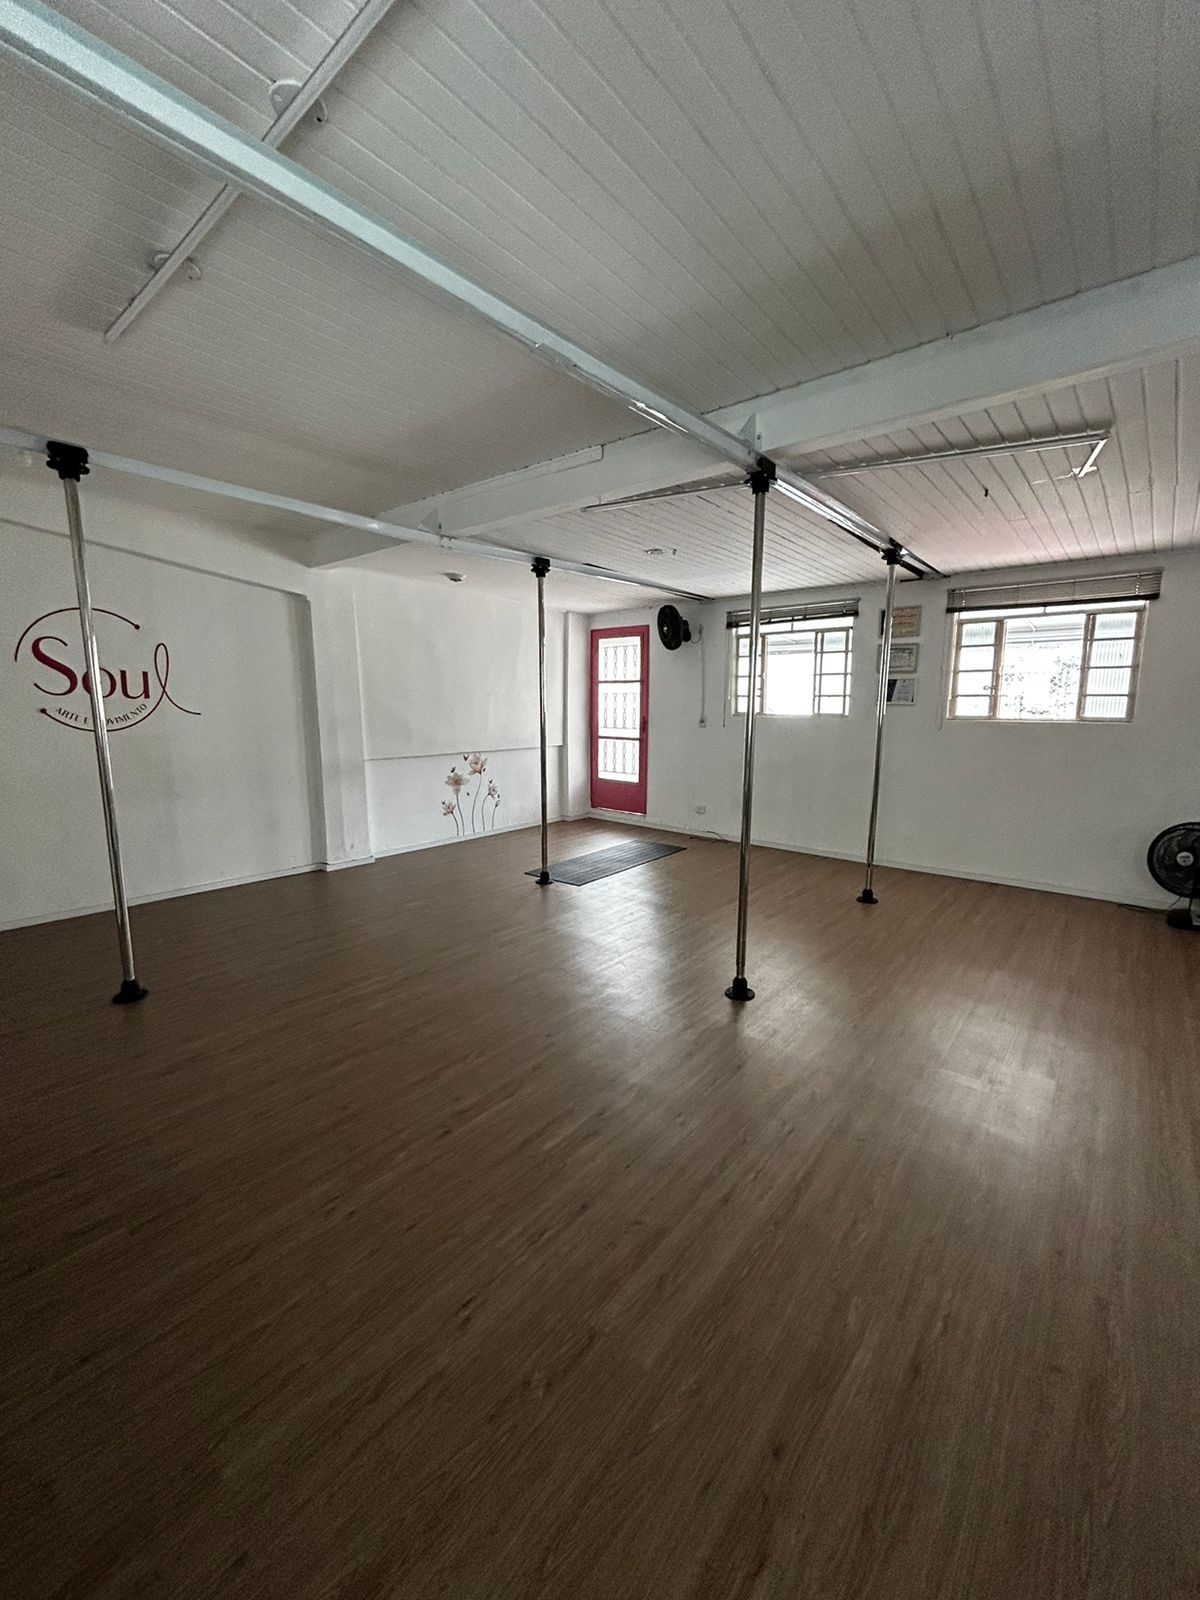 Lindo e moderno estúdio de Dança, Pole Dance, Yoga e Arte na ZN de São Paulo 